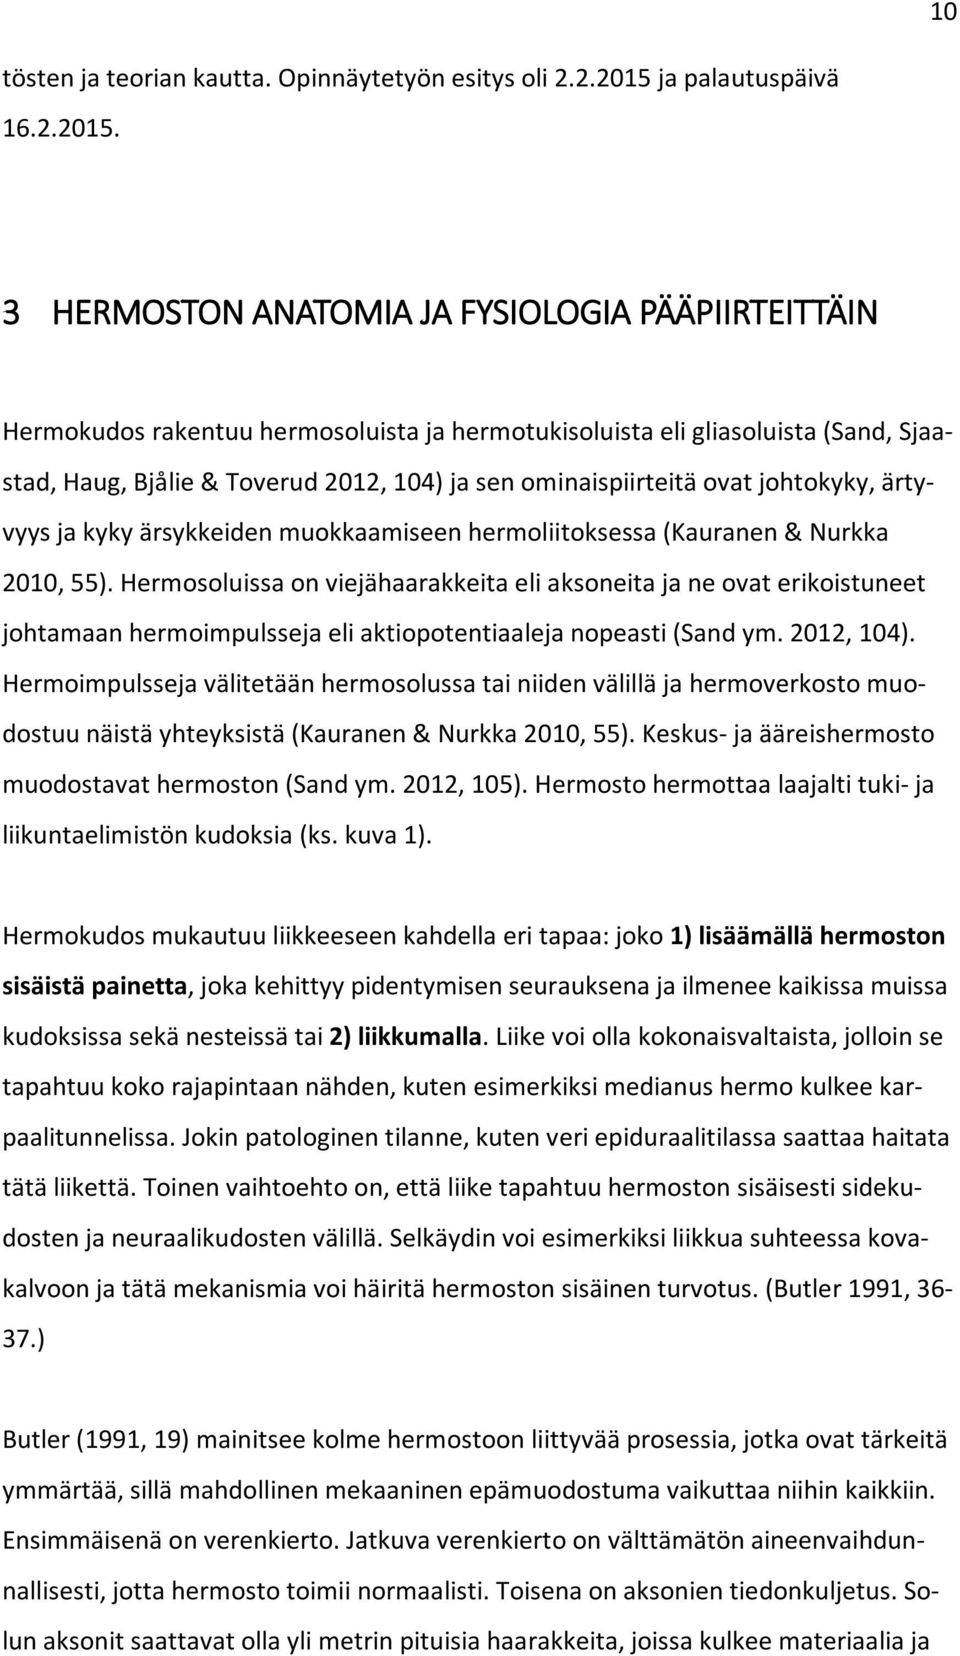 3 HERMOSTON ANATOMIA JA FYSIOLOGIA PÄÄPIIRTEITTÄIN Hermokudos rakentuu hermosoluista ja hermotukisoluista eli gliasoluista (Sand, Sjaastad, Haug, Bjålie & Toverud 2012, 104) ja sen ominaispiirteitä